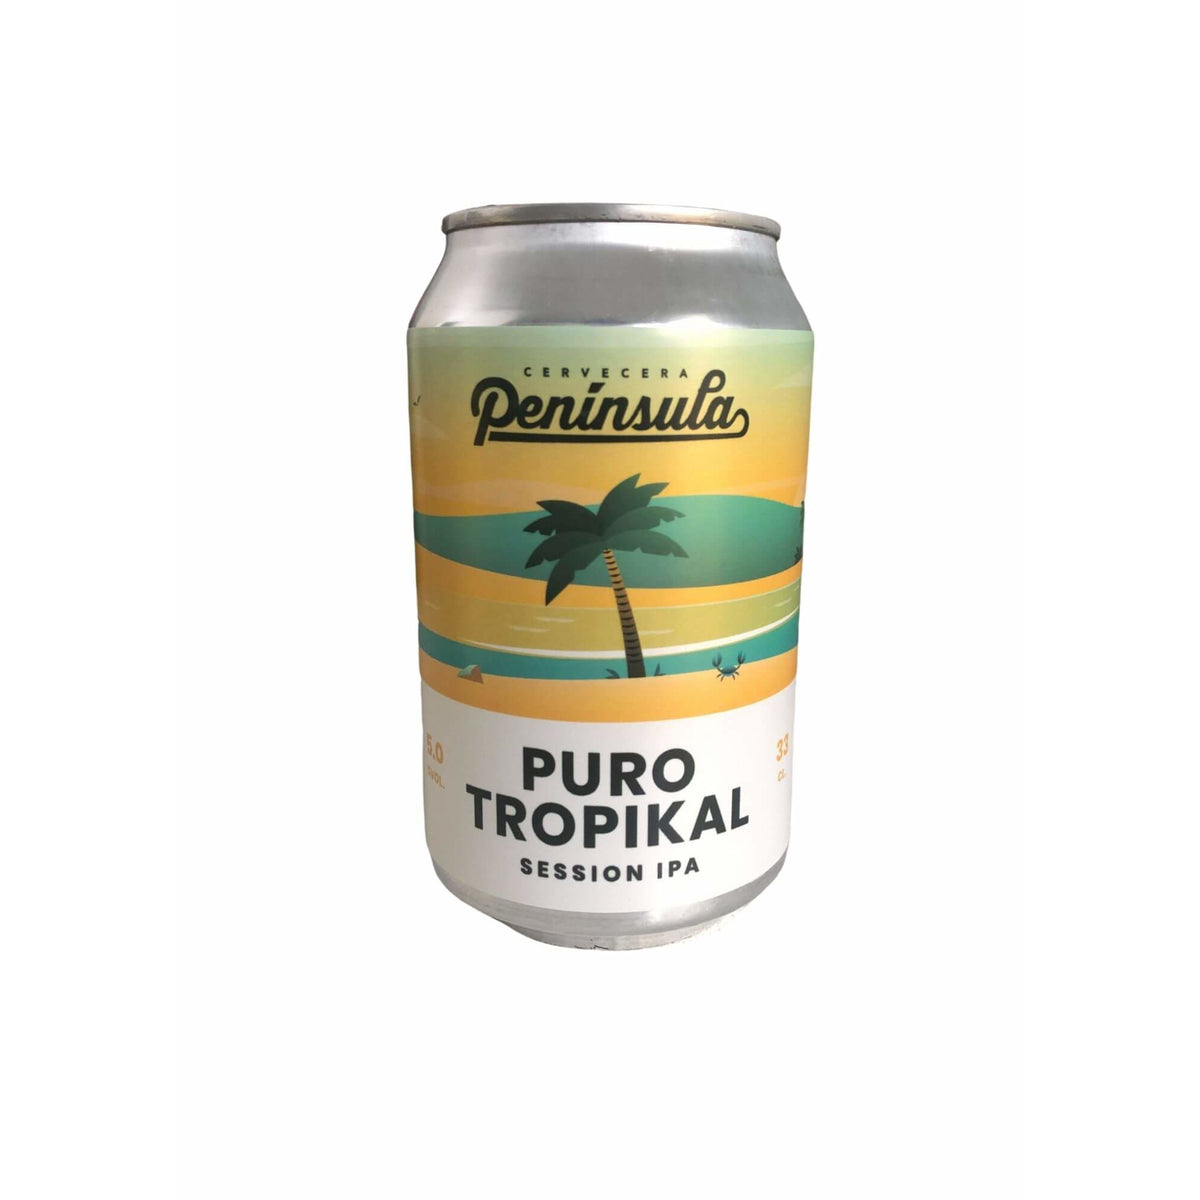 Puro Tropikal | Cervecera Península - Cans & Corks